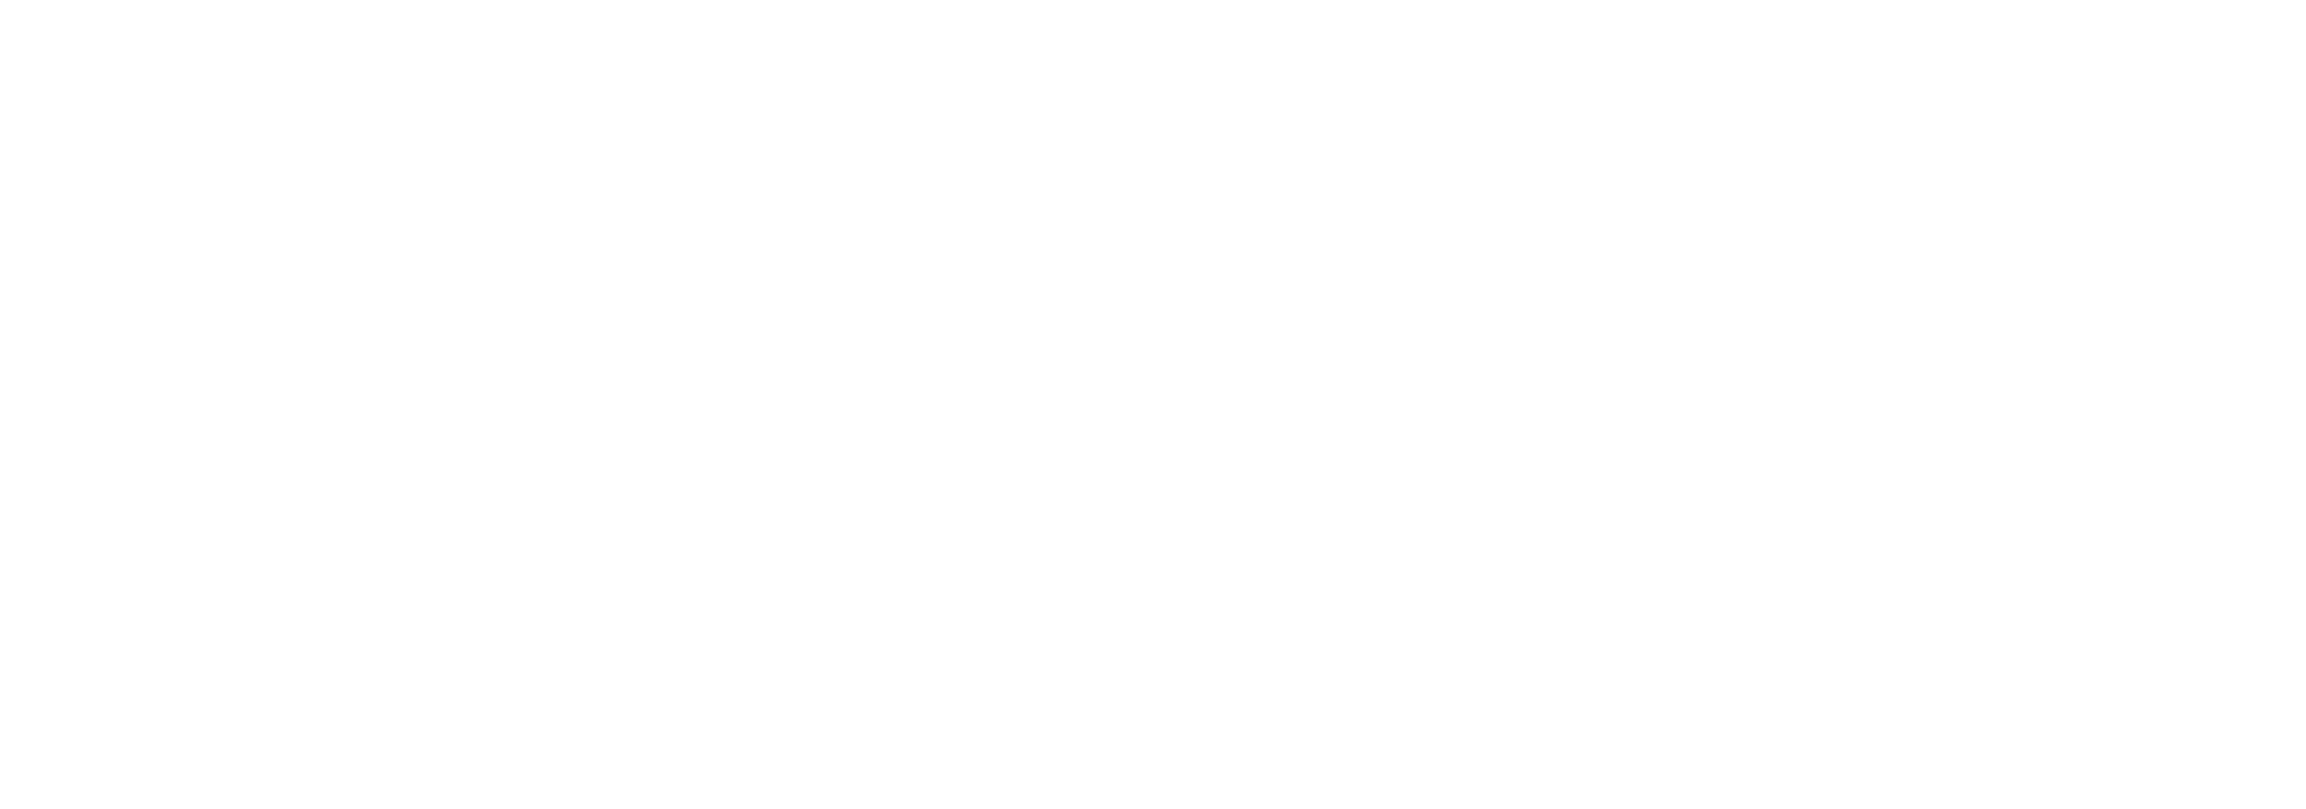 Creatividad, cultura y capital Espanol